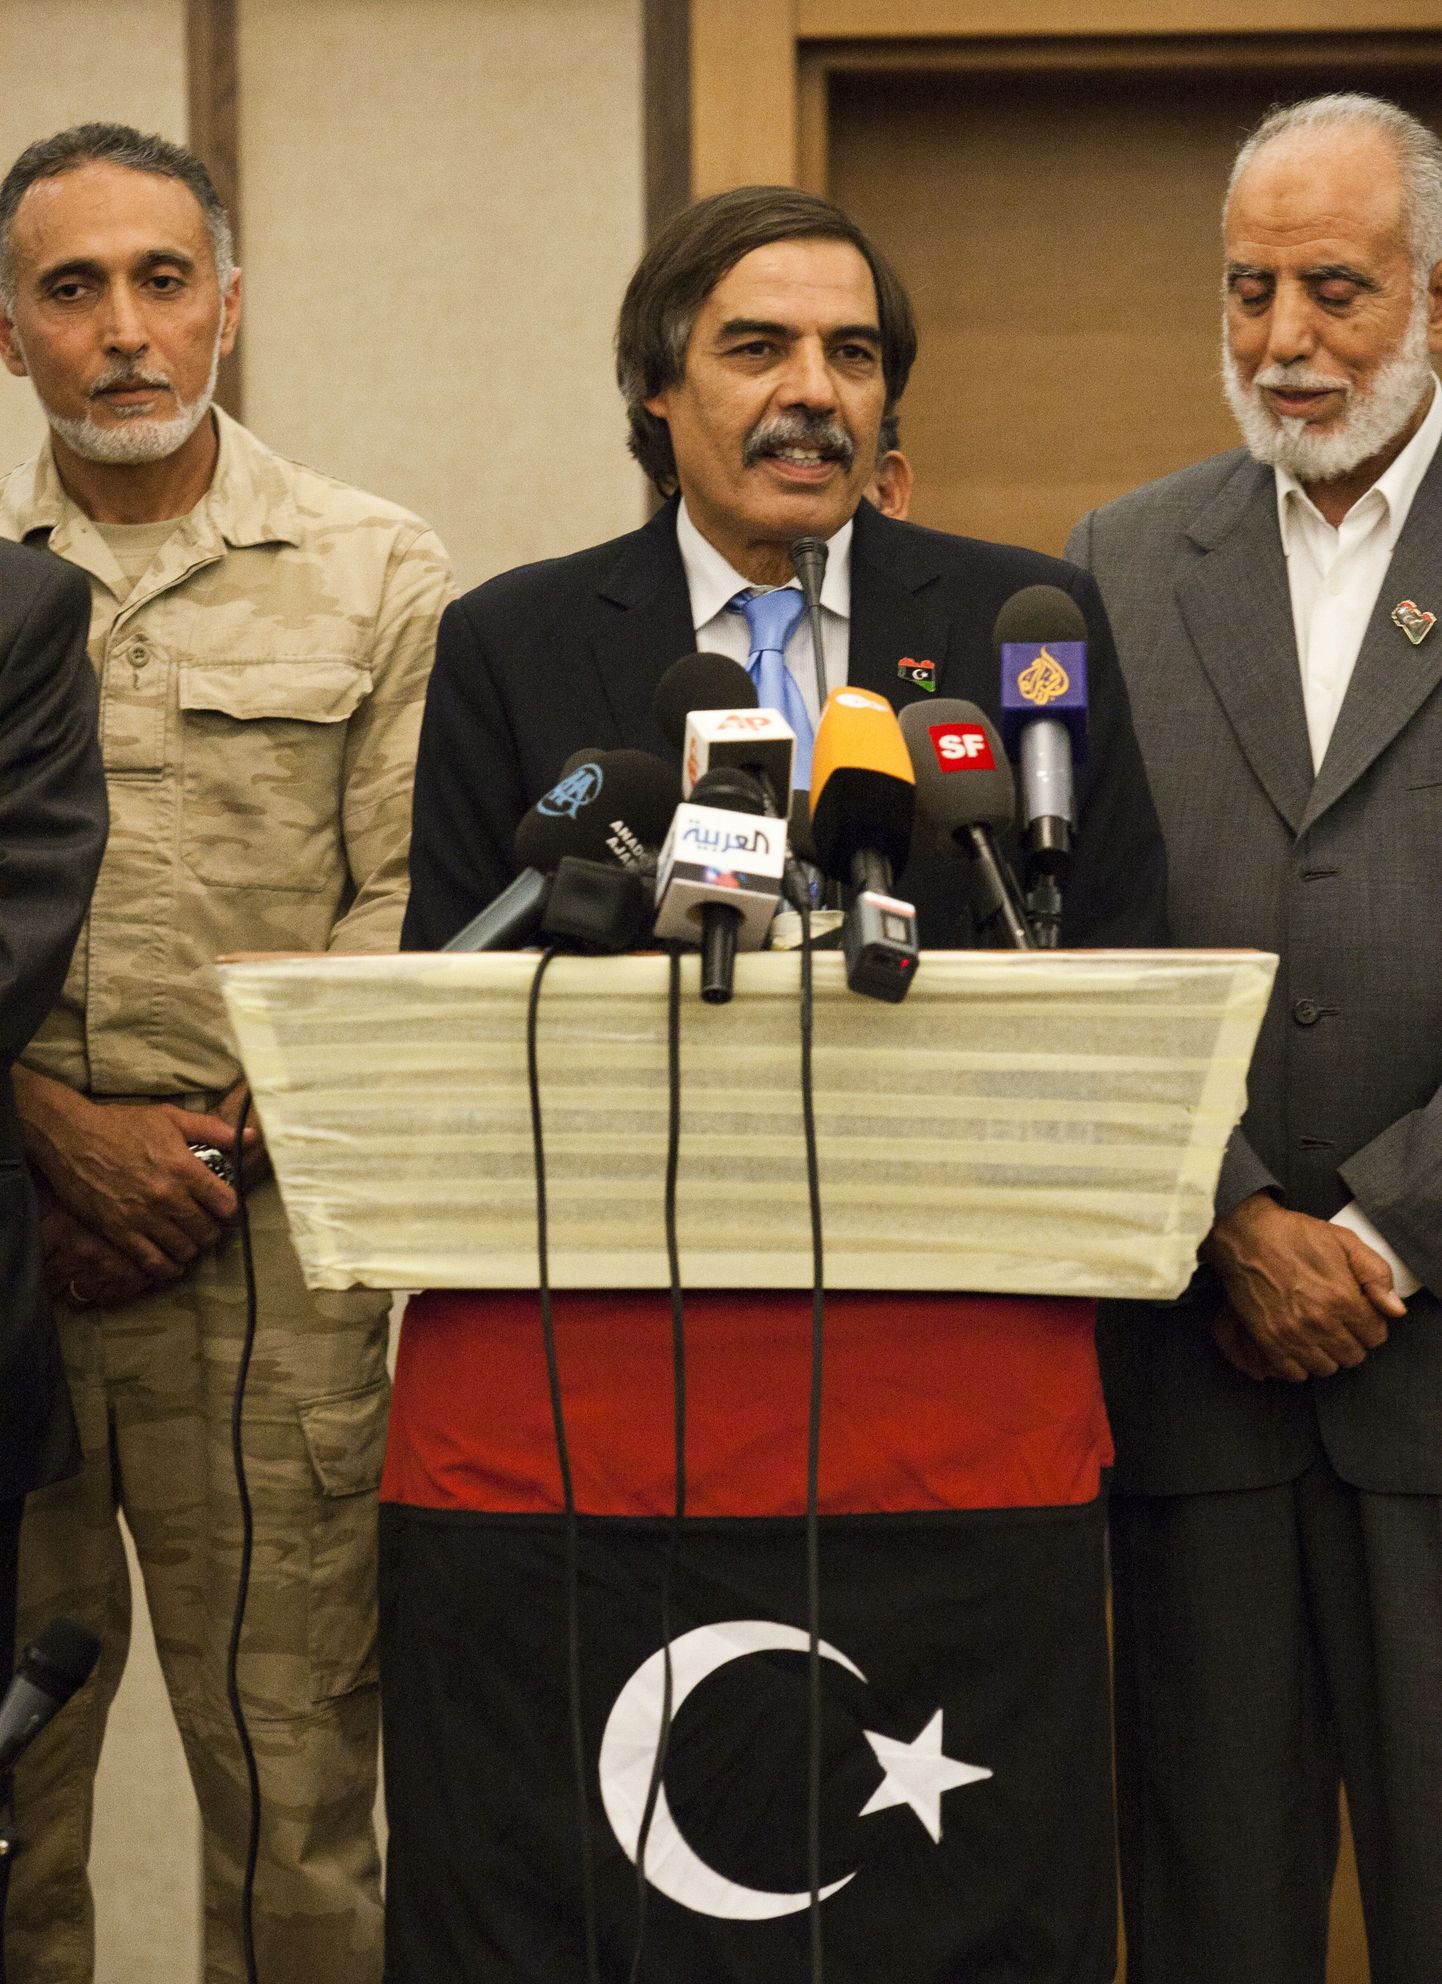 Liibüa mässajate valitsuse rahandusminister Ali Tarhouni pressikonverentsil